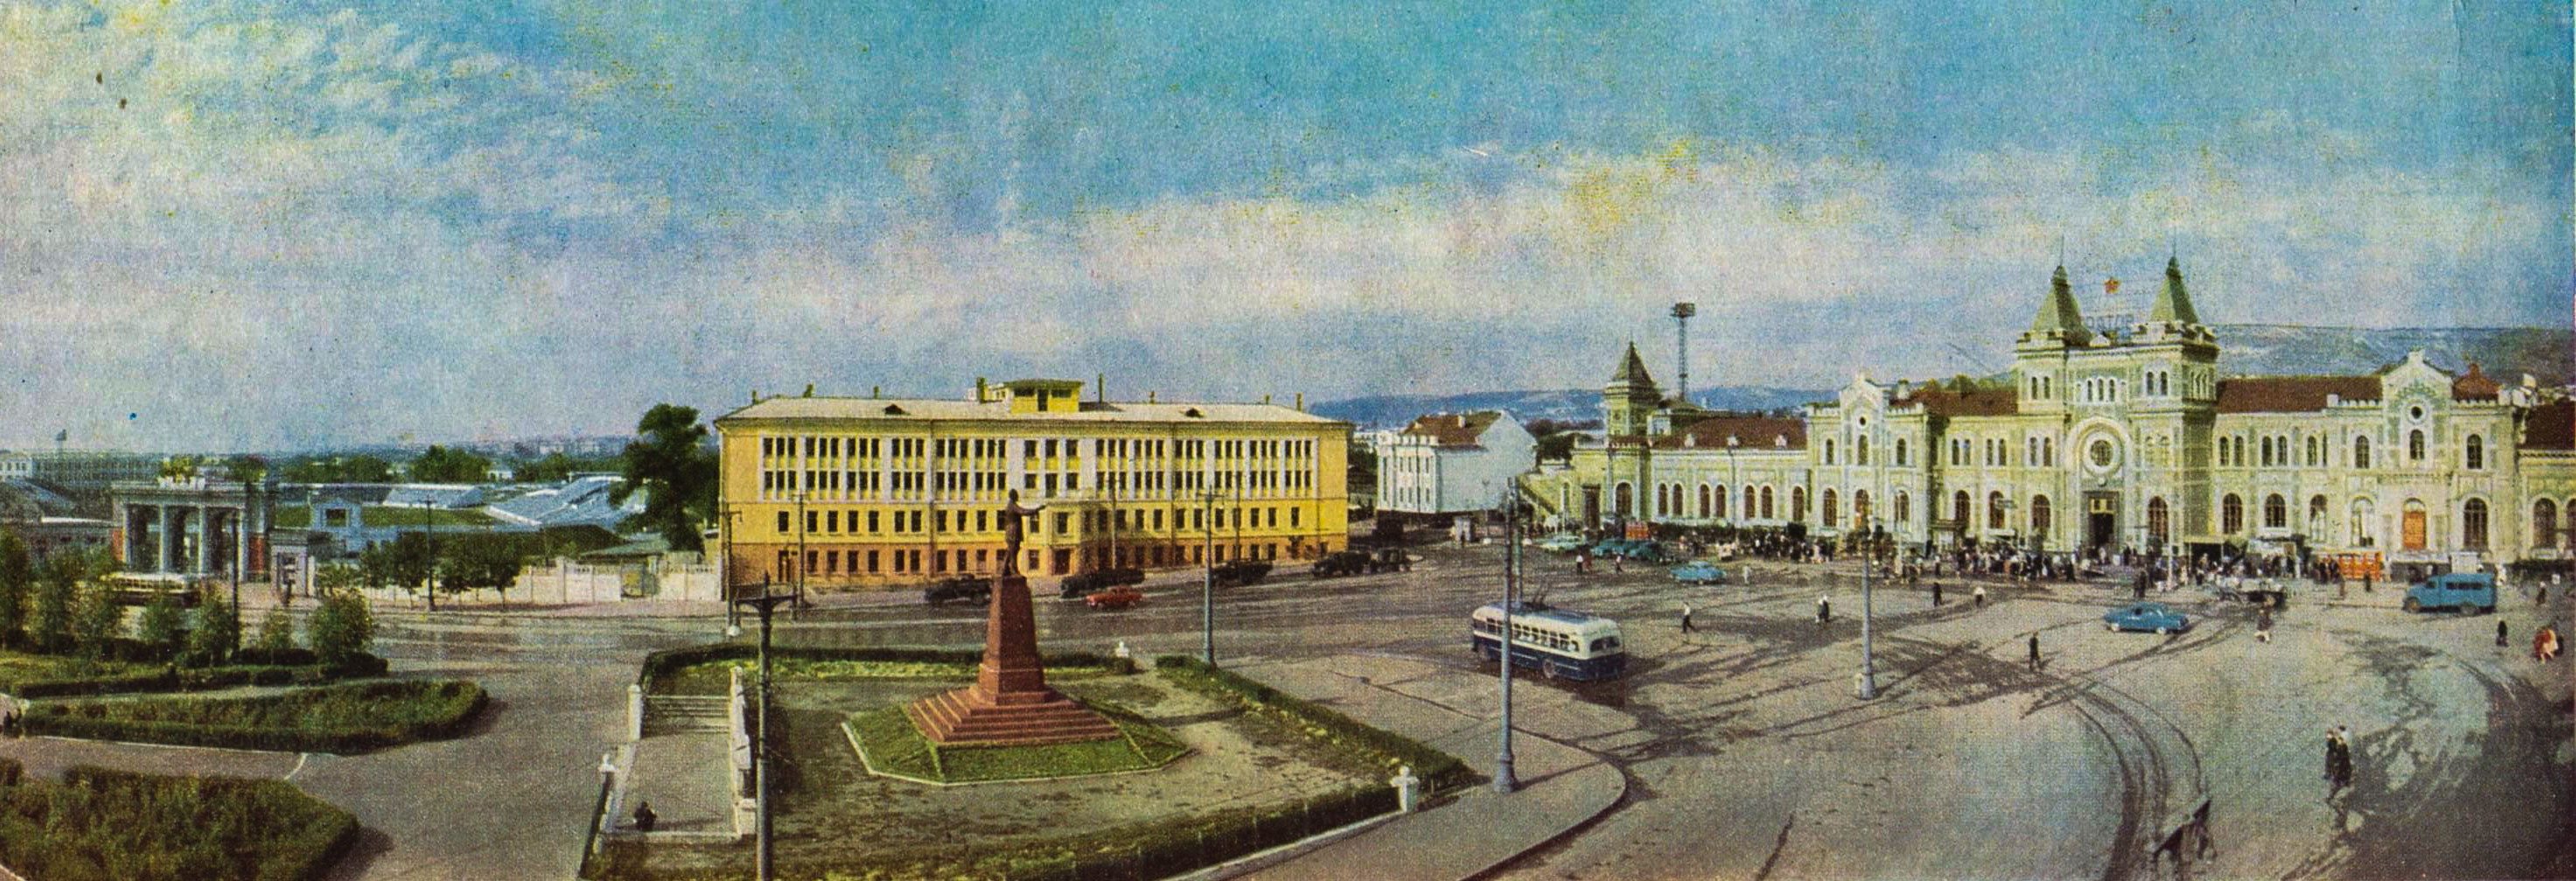 Вокзальная площадь Саратов